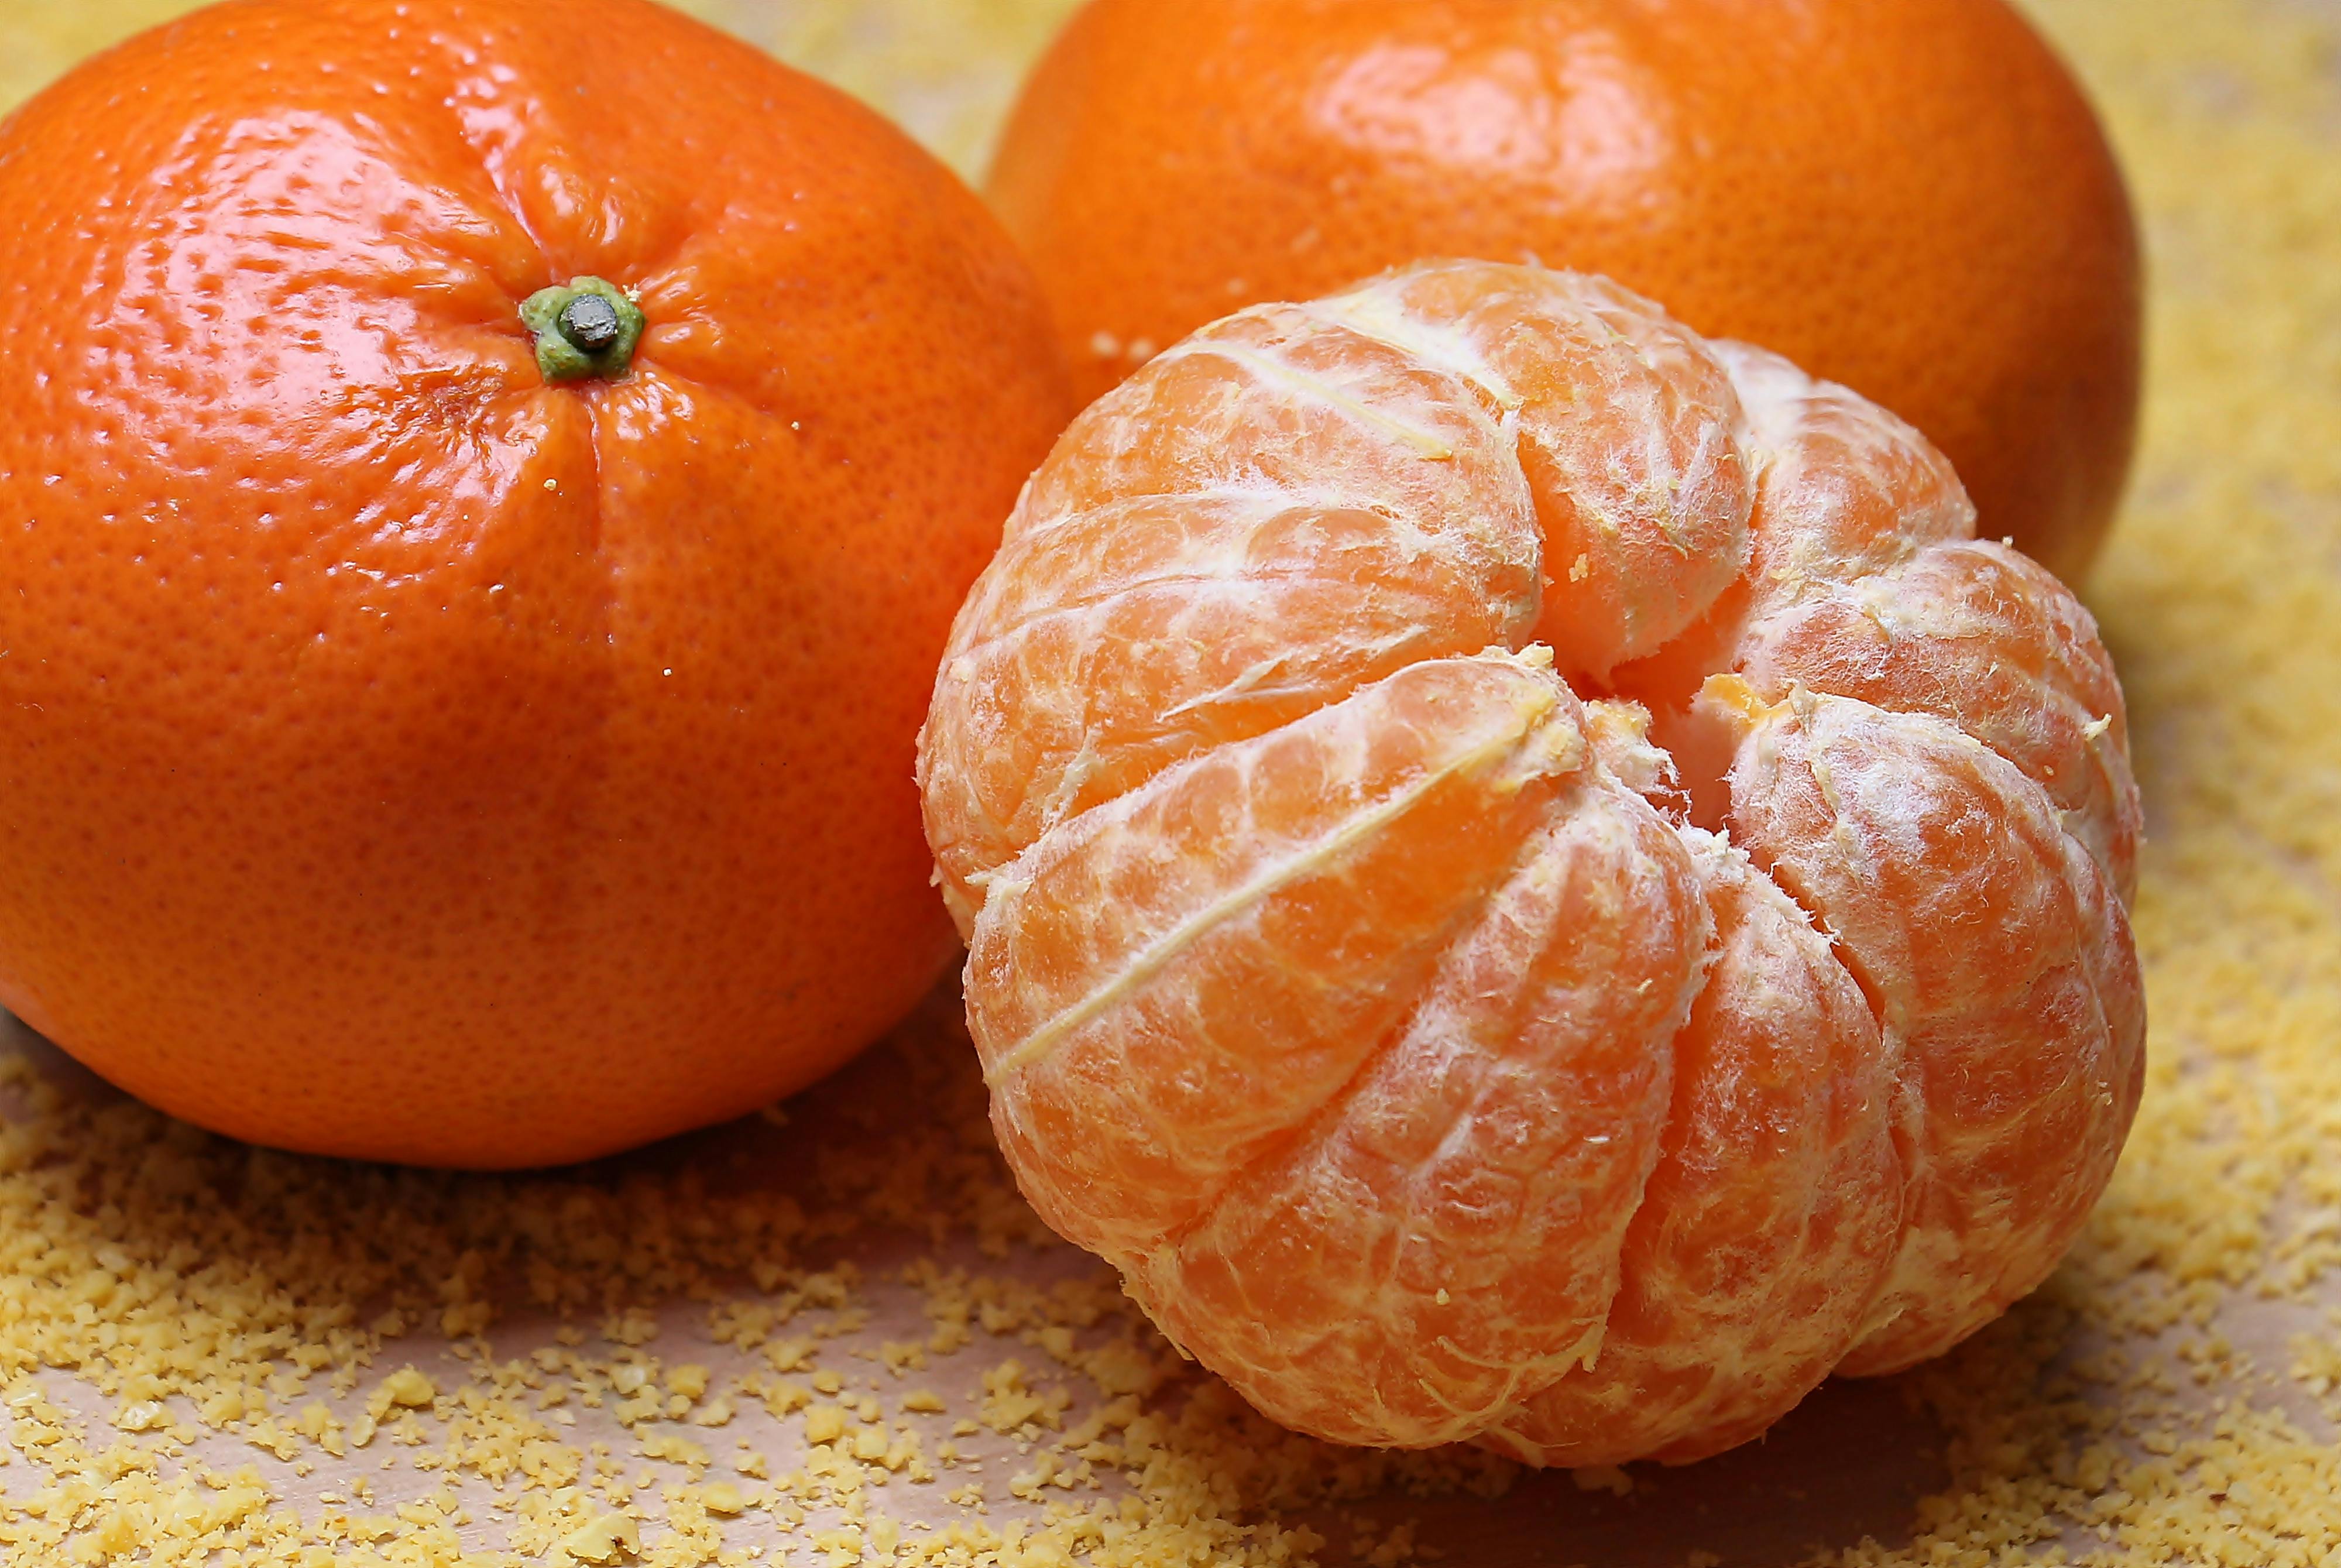 orange images